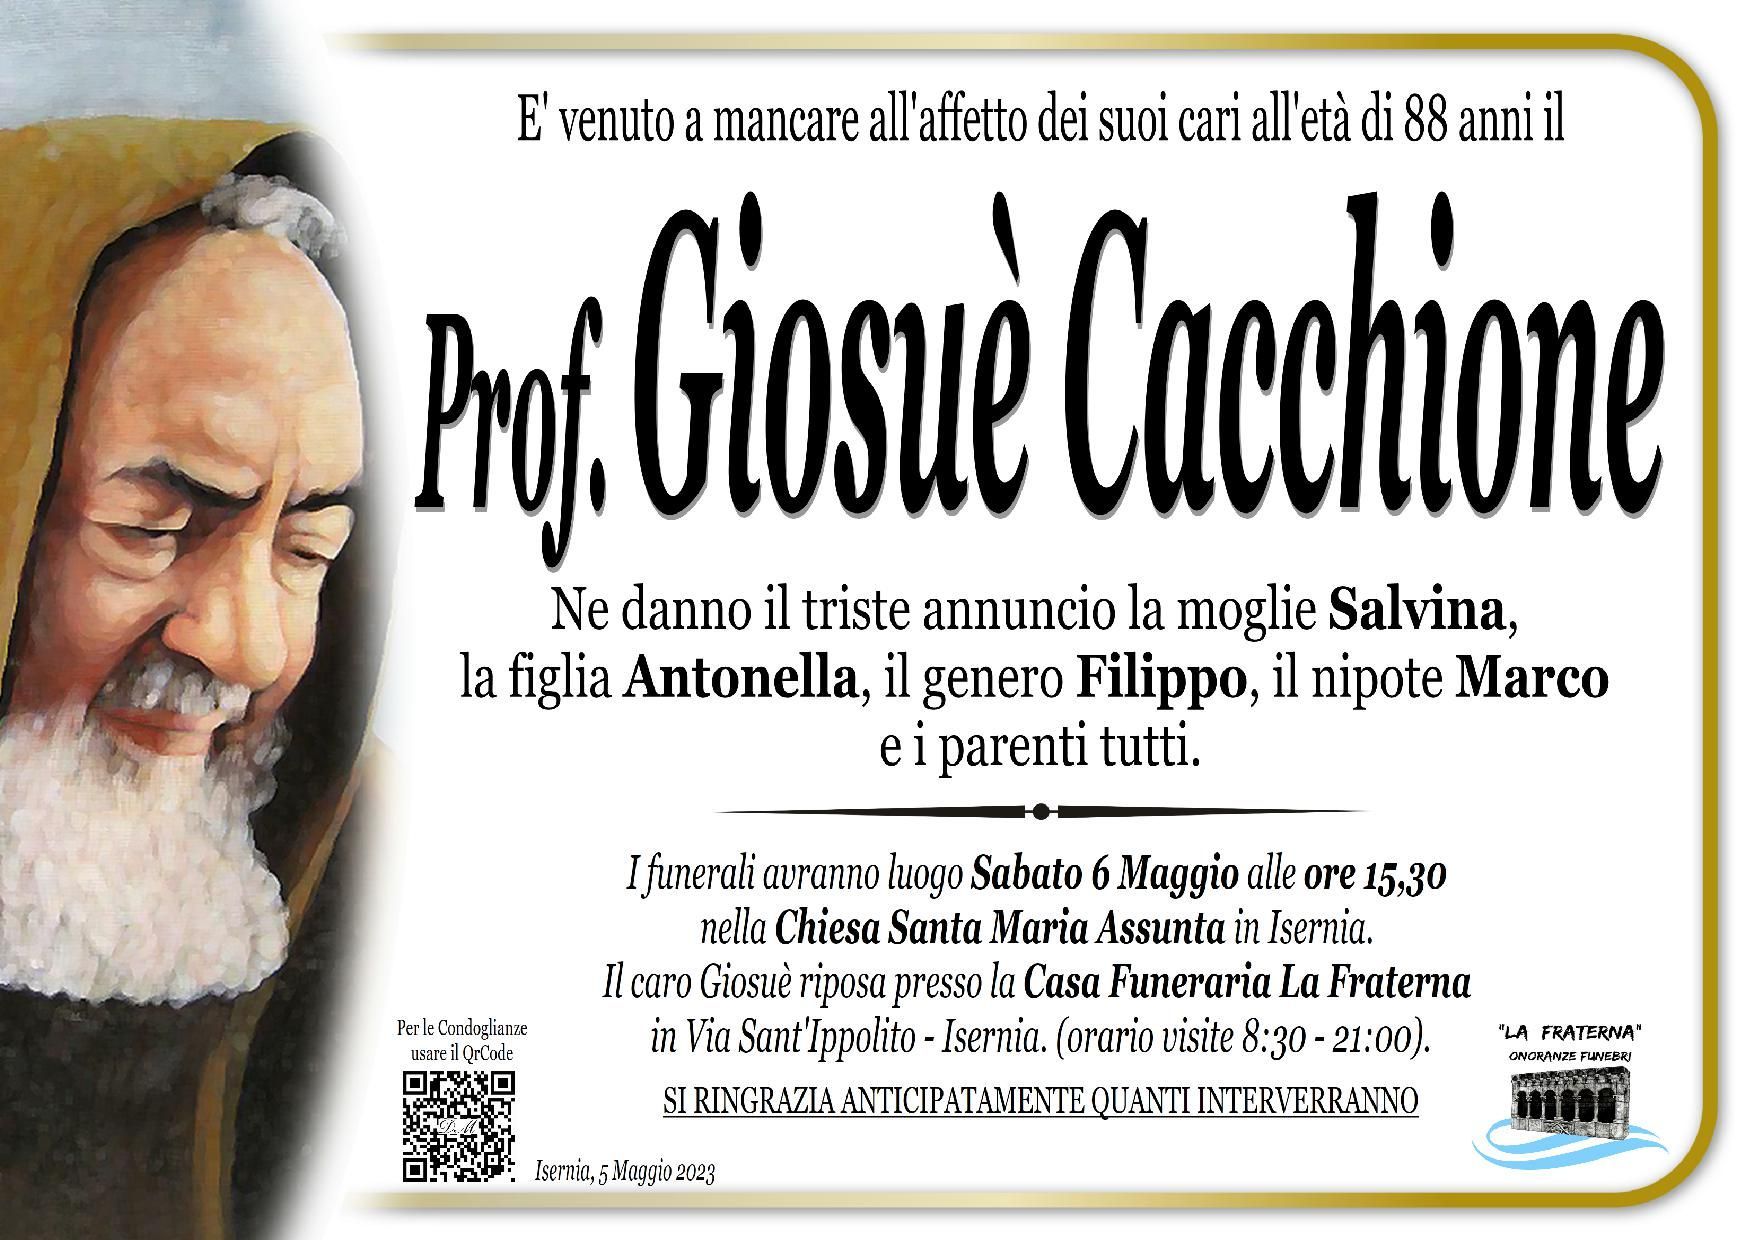 necrologio Giosuè Cacchione